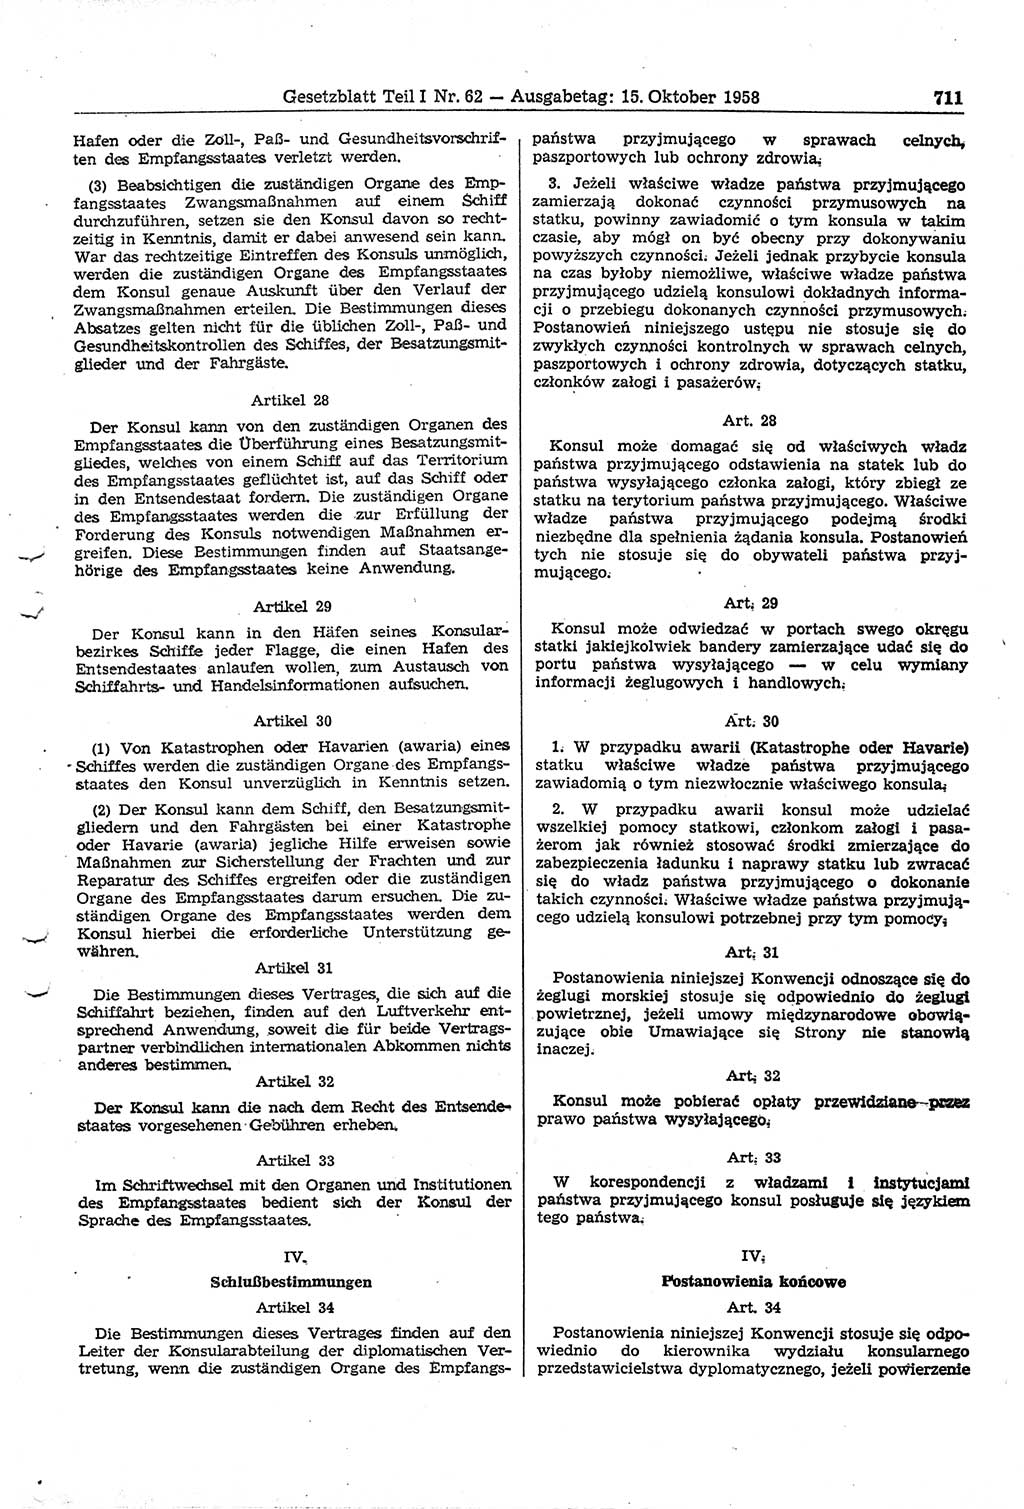 Gesetzblatt (GBl.) der Deutschen Demokratischen Republik (DDR) Teil Ⅰ 1958, Seite 711 (GBl. DDR Ⅰ 1958, S. 711)